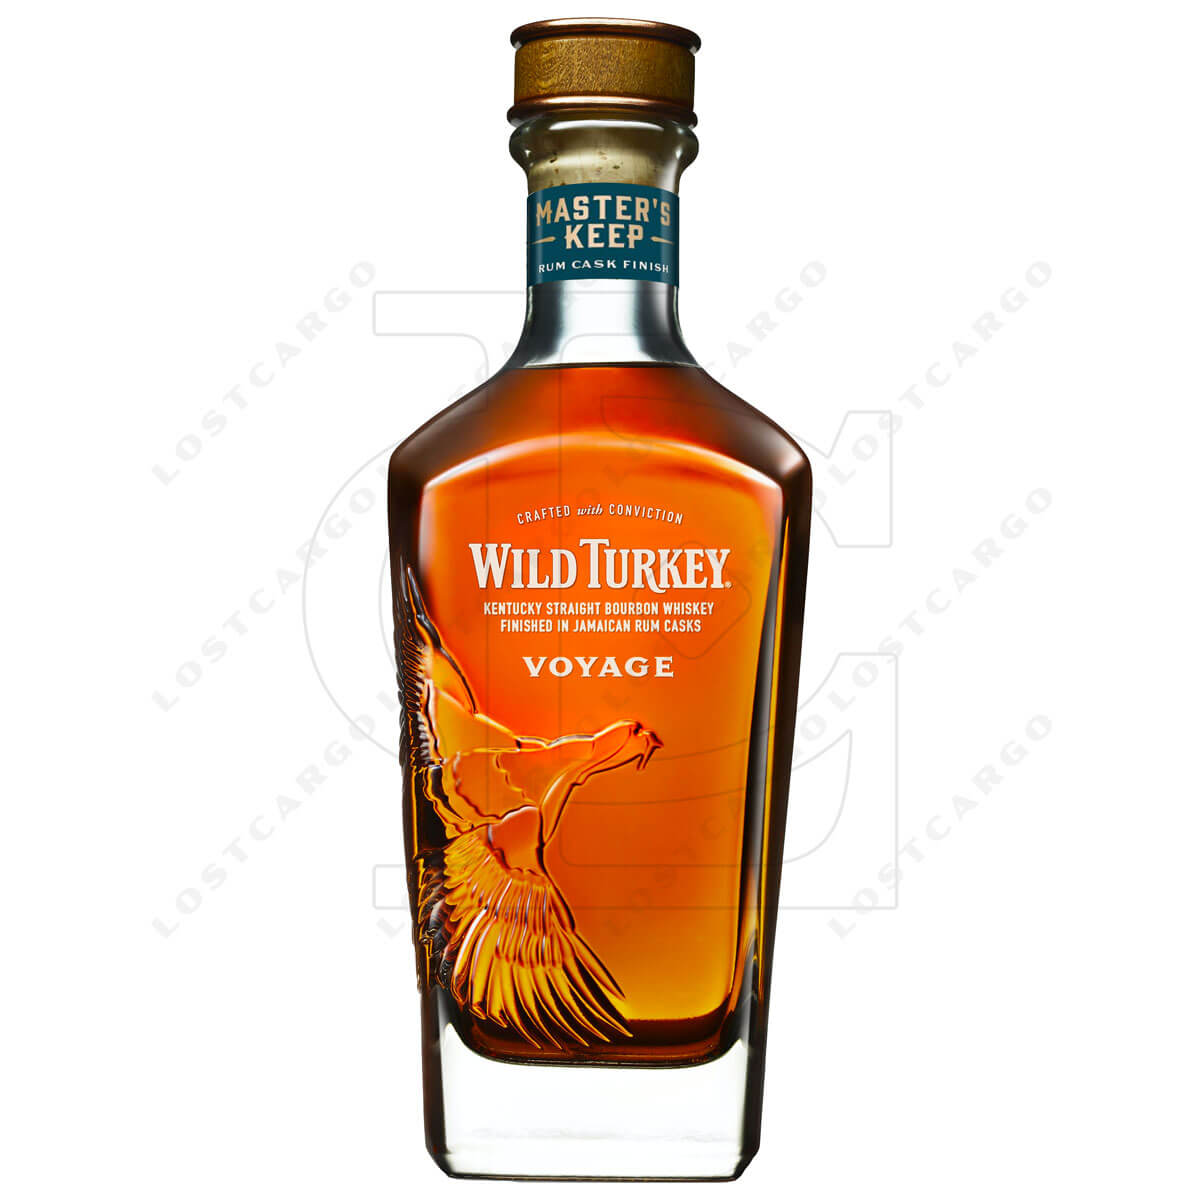 Wild Turkey Master's Keep Voyage (2023) bottle